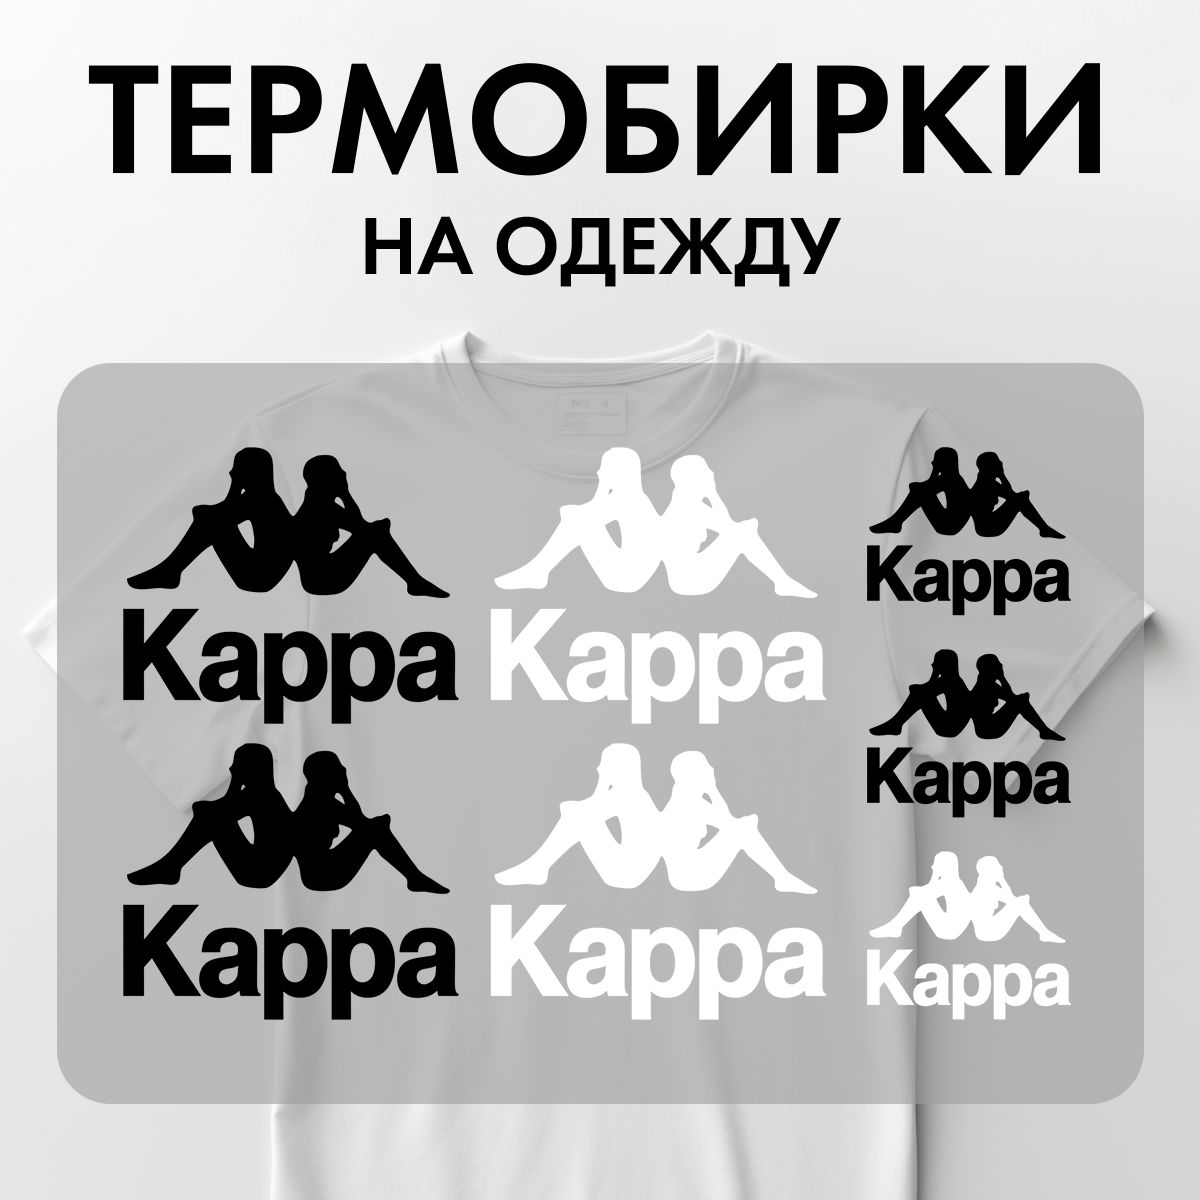 Термонаклейки Rekoy TB-LOGO Kap на одежду, логотип, надписи